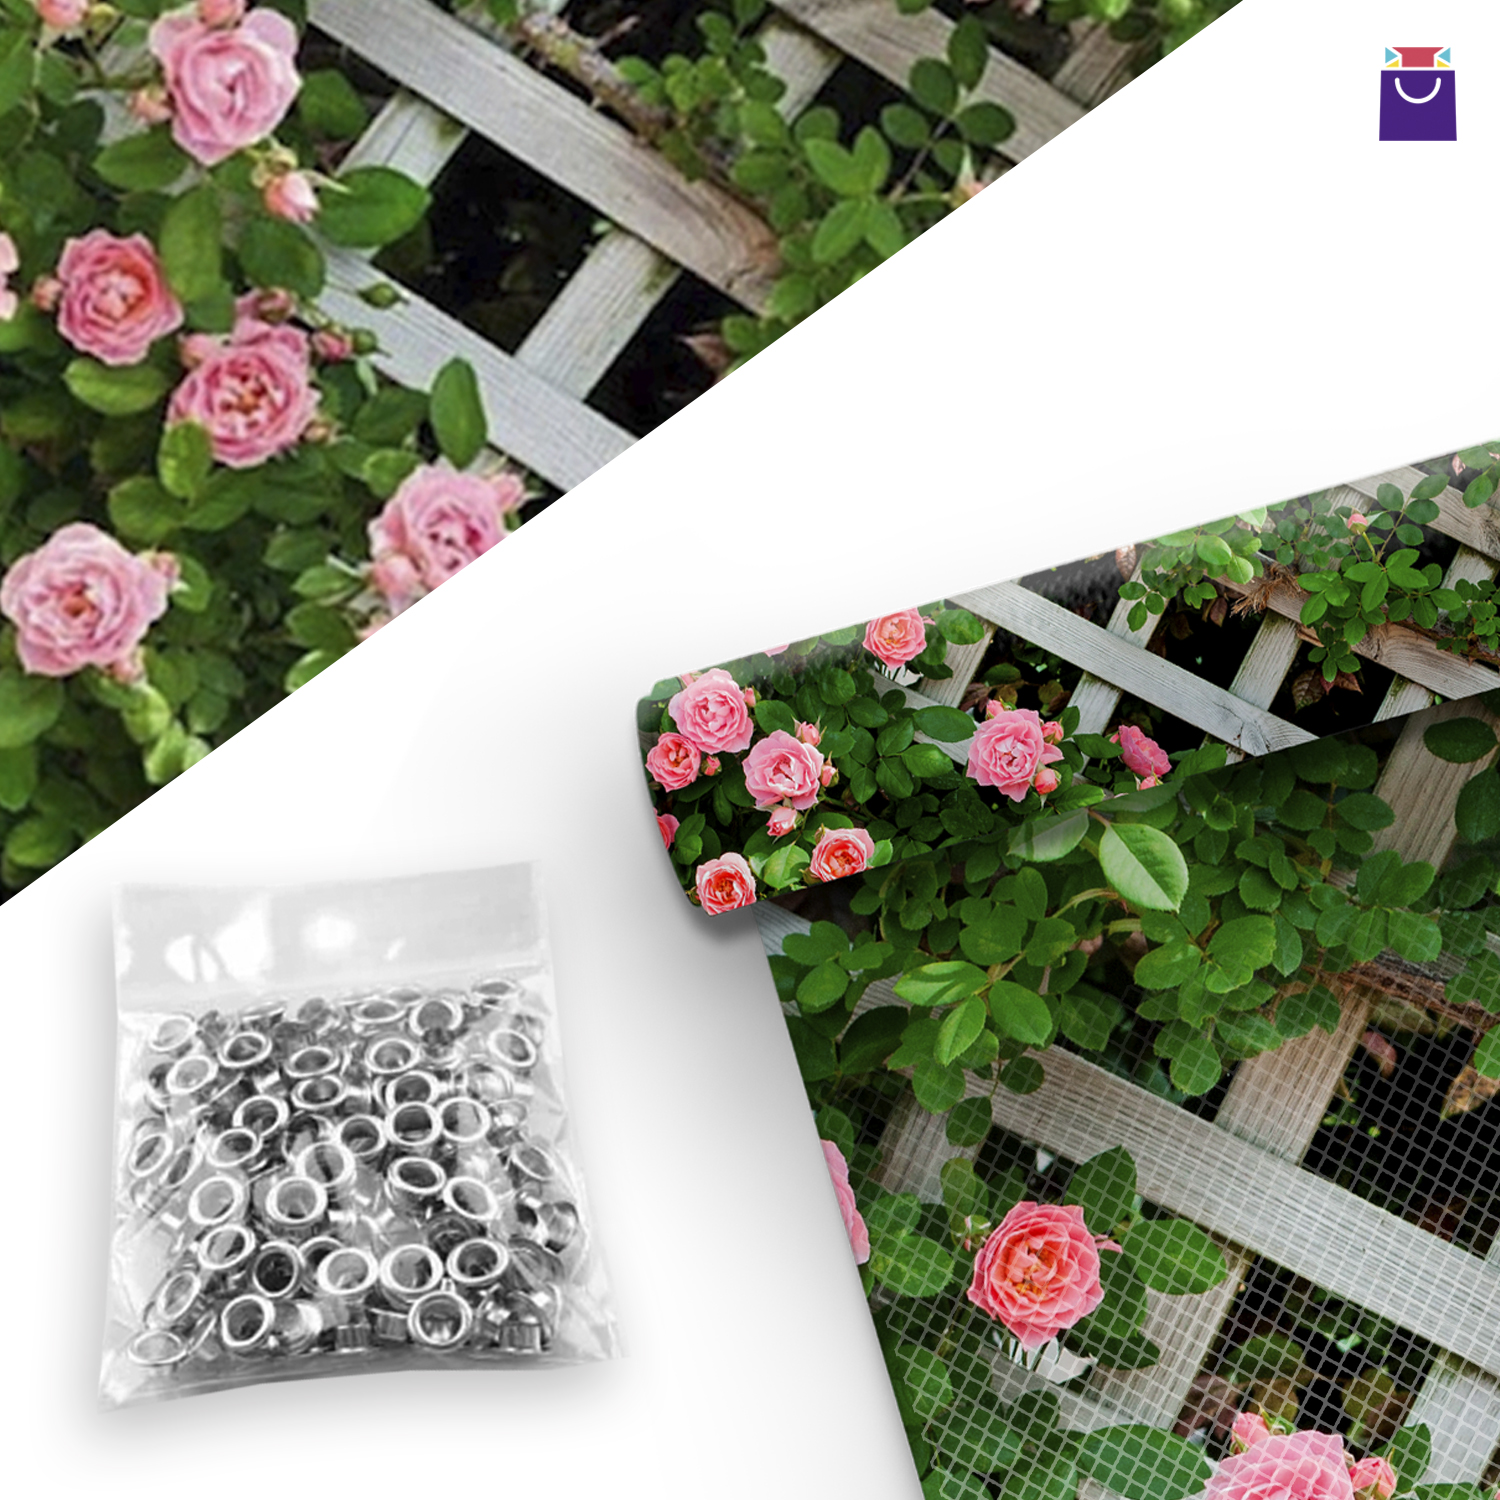 PVC-Netz mit Aufdruck "Ein pulsierendes Leben", Gartenblumen